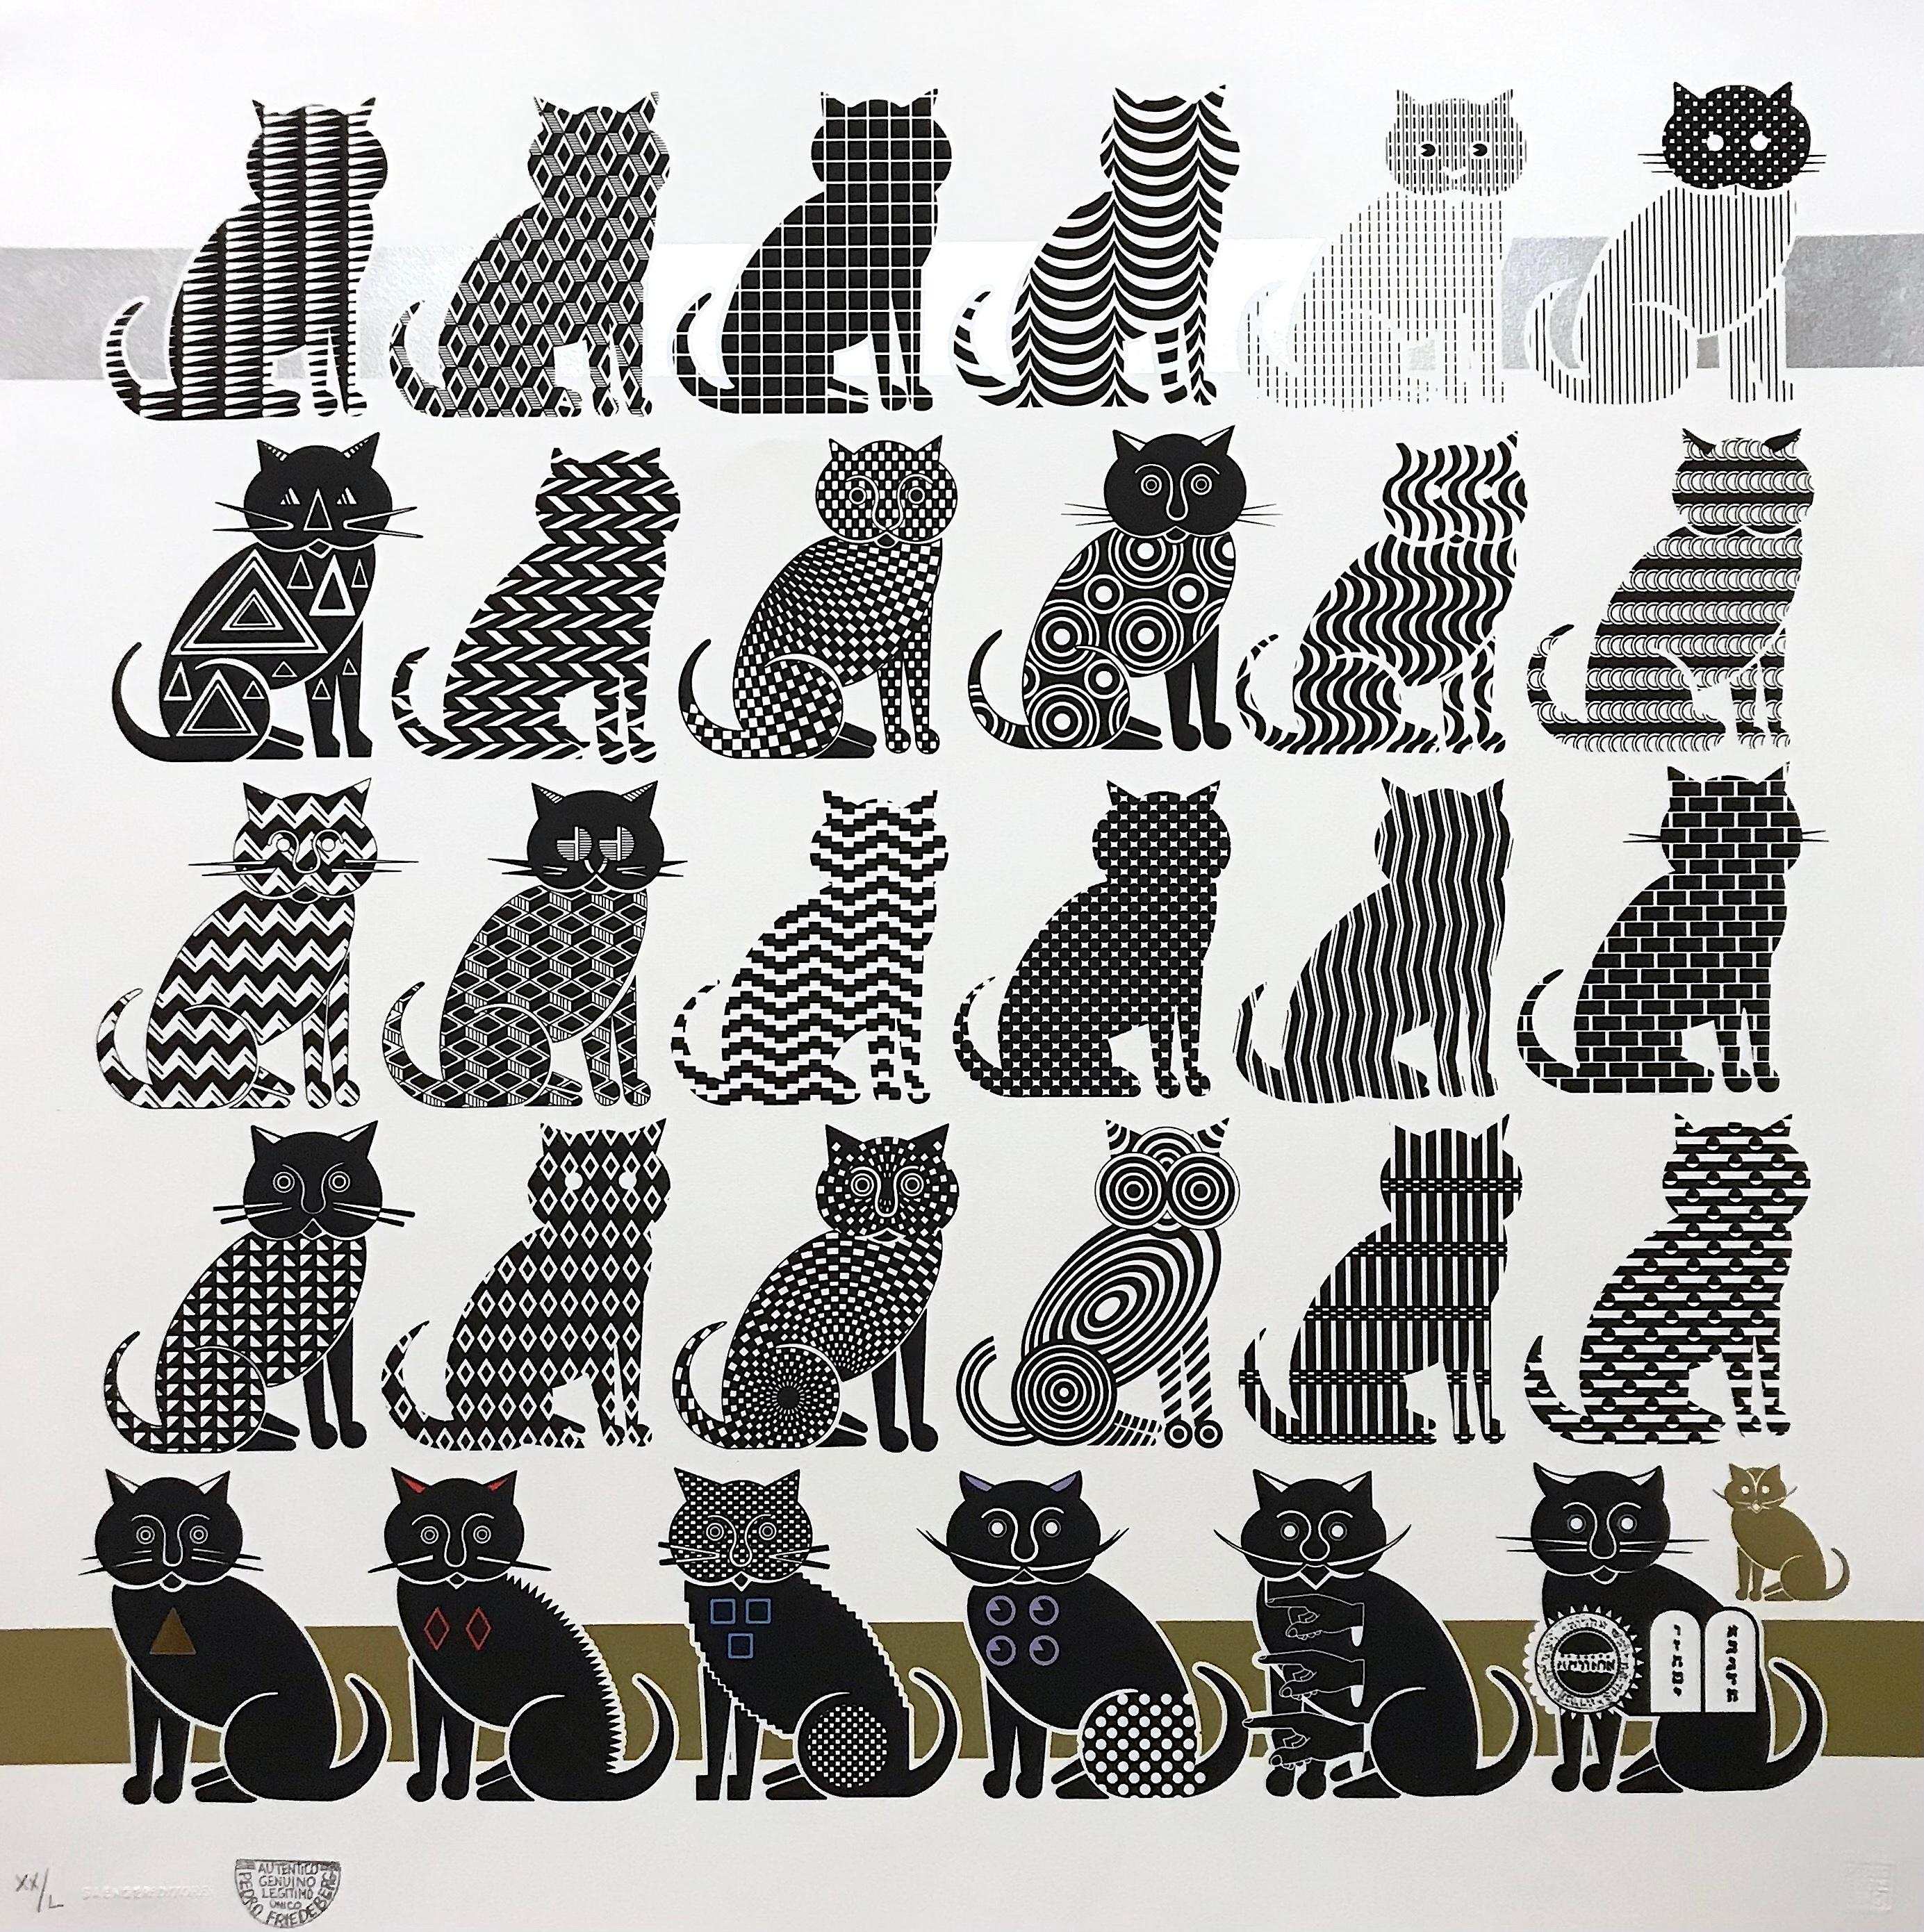 Figurative Print Pedro Friedeberg - "Cats" - Impression surréaliste 2d, motifs en noir et blanc, animaux